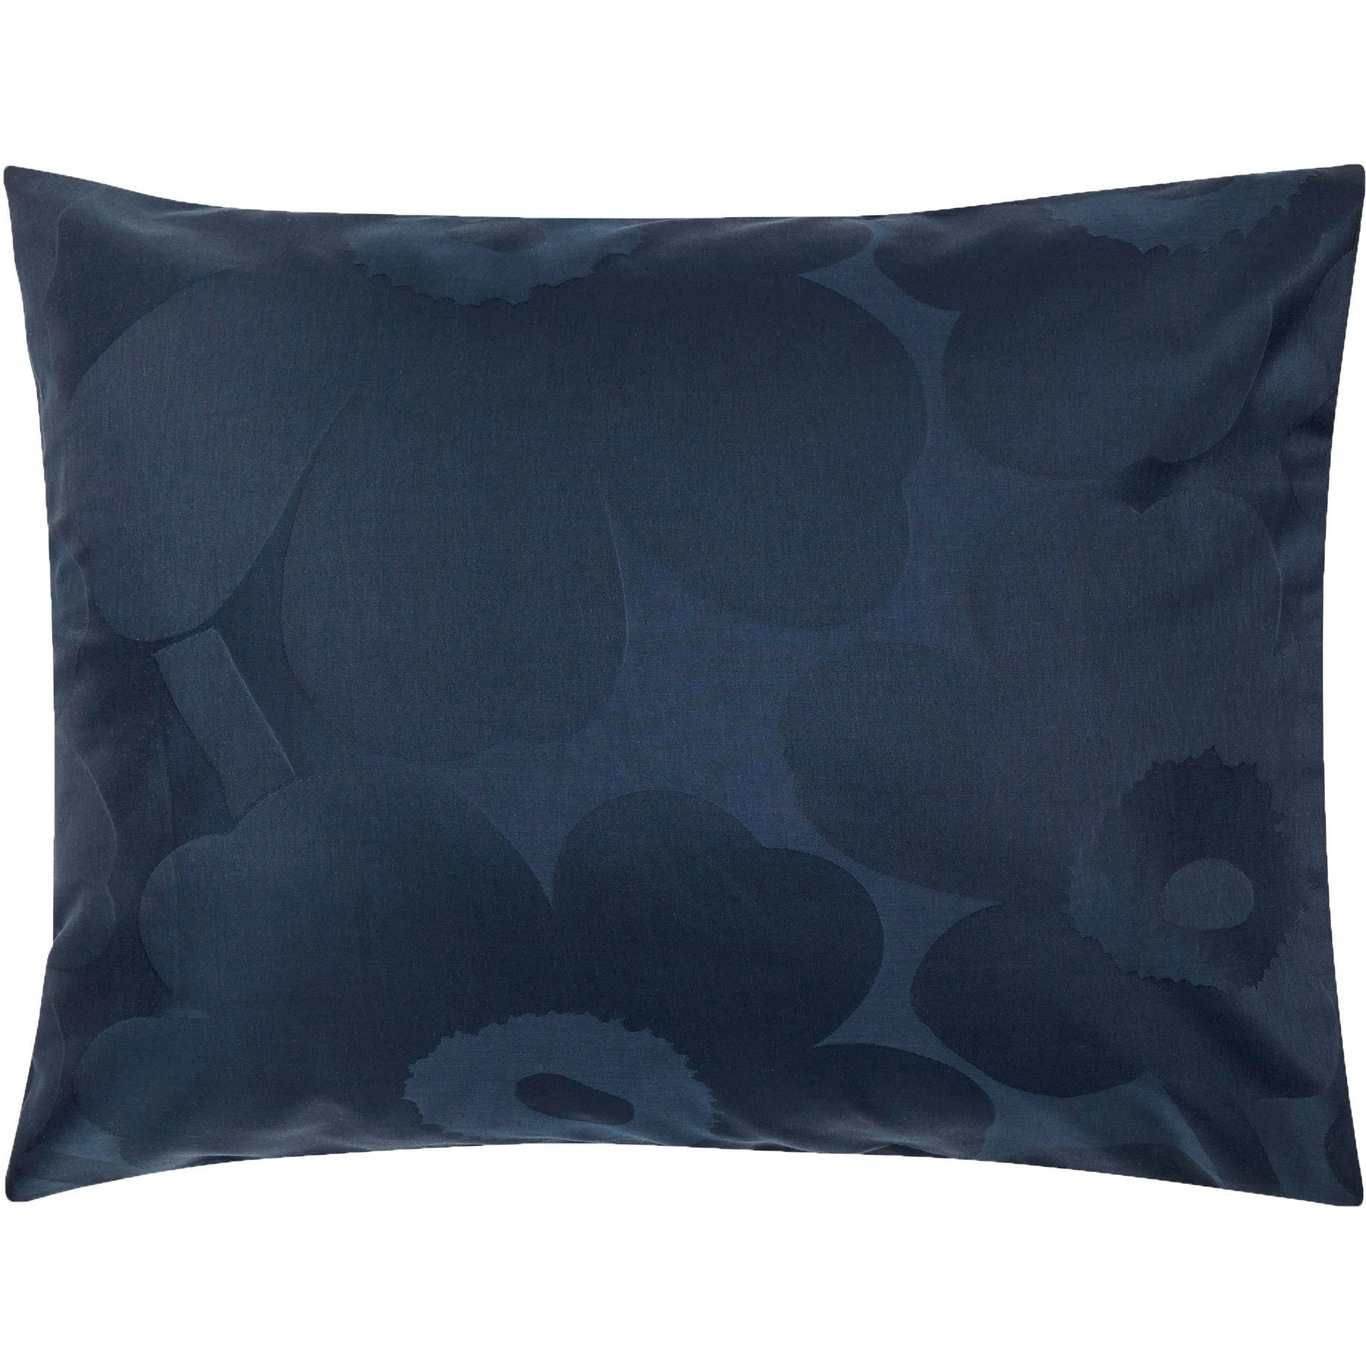 Unikko Jacquard Tyynynpäällinen 50x60 cm, Sininen